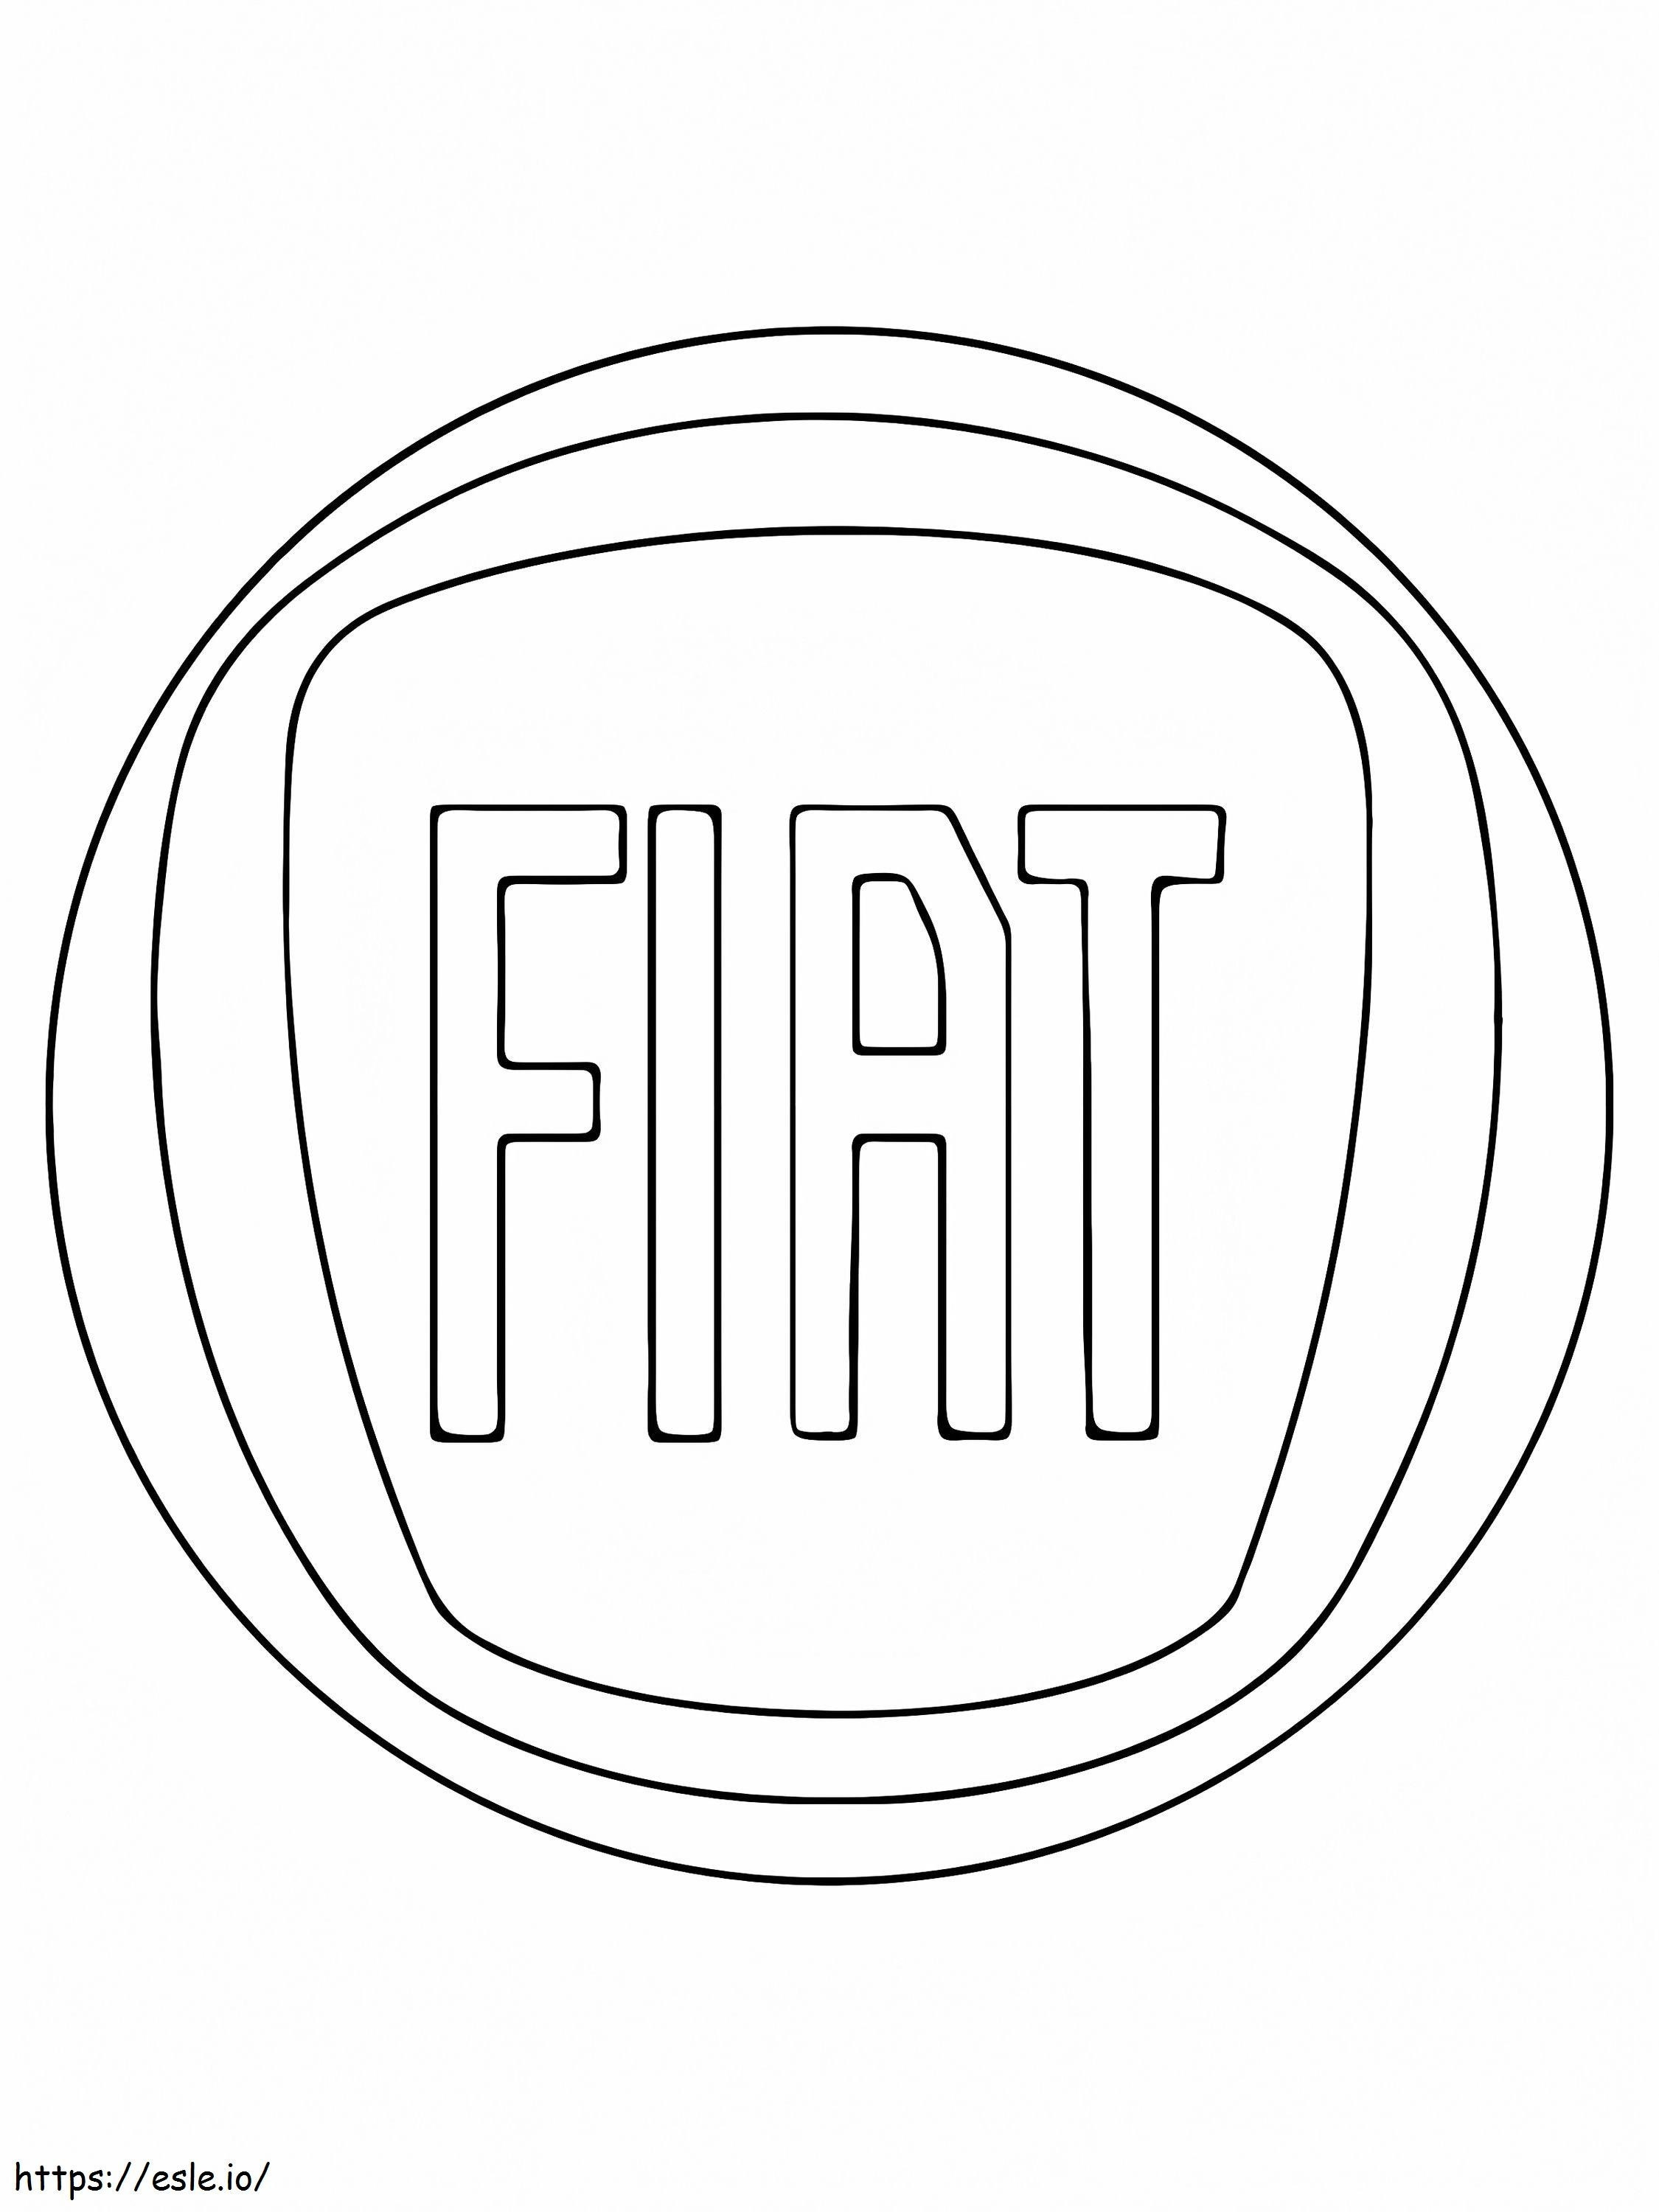 Logotipo do carro Fiat para colorir